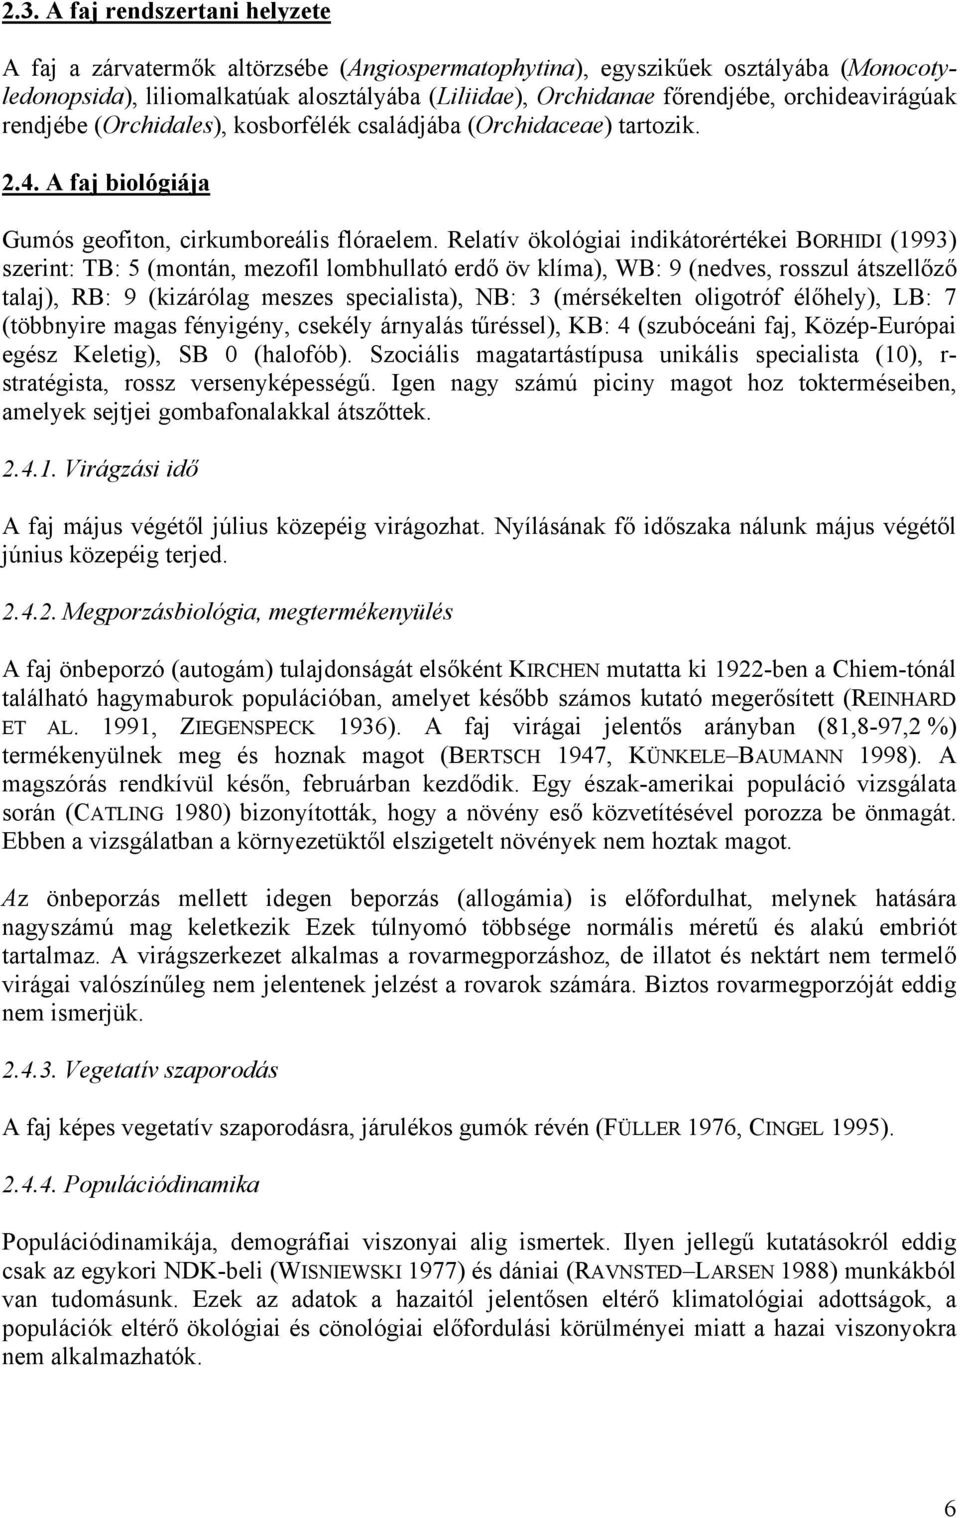 Relatív ökológiai indikátorértékei BORHIDI (1993) szerint: TB: 5 (montán, mezofil lombhullató erdő öv klíma), WB: 9 (nedves, rosszul átszellőző talaj), RB: 9 (kizárólag meszes specialista), NB: 3